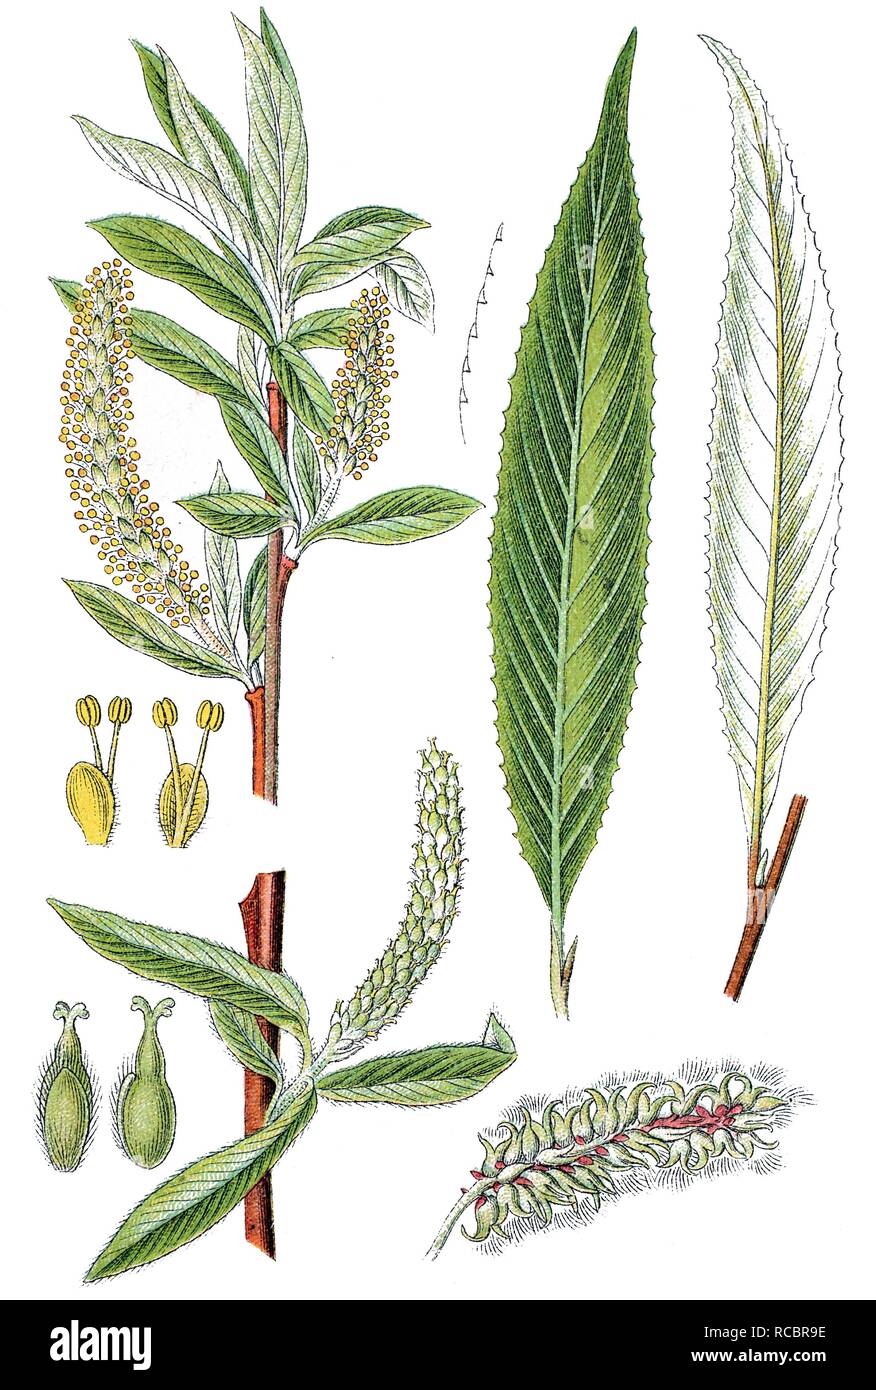 Weiße Weide (Salix alba), Heilpflanzen, nützliche Pflanze, chromolithograph, ca. 1790 Stockfoto